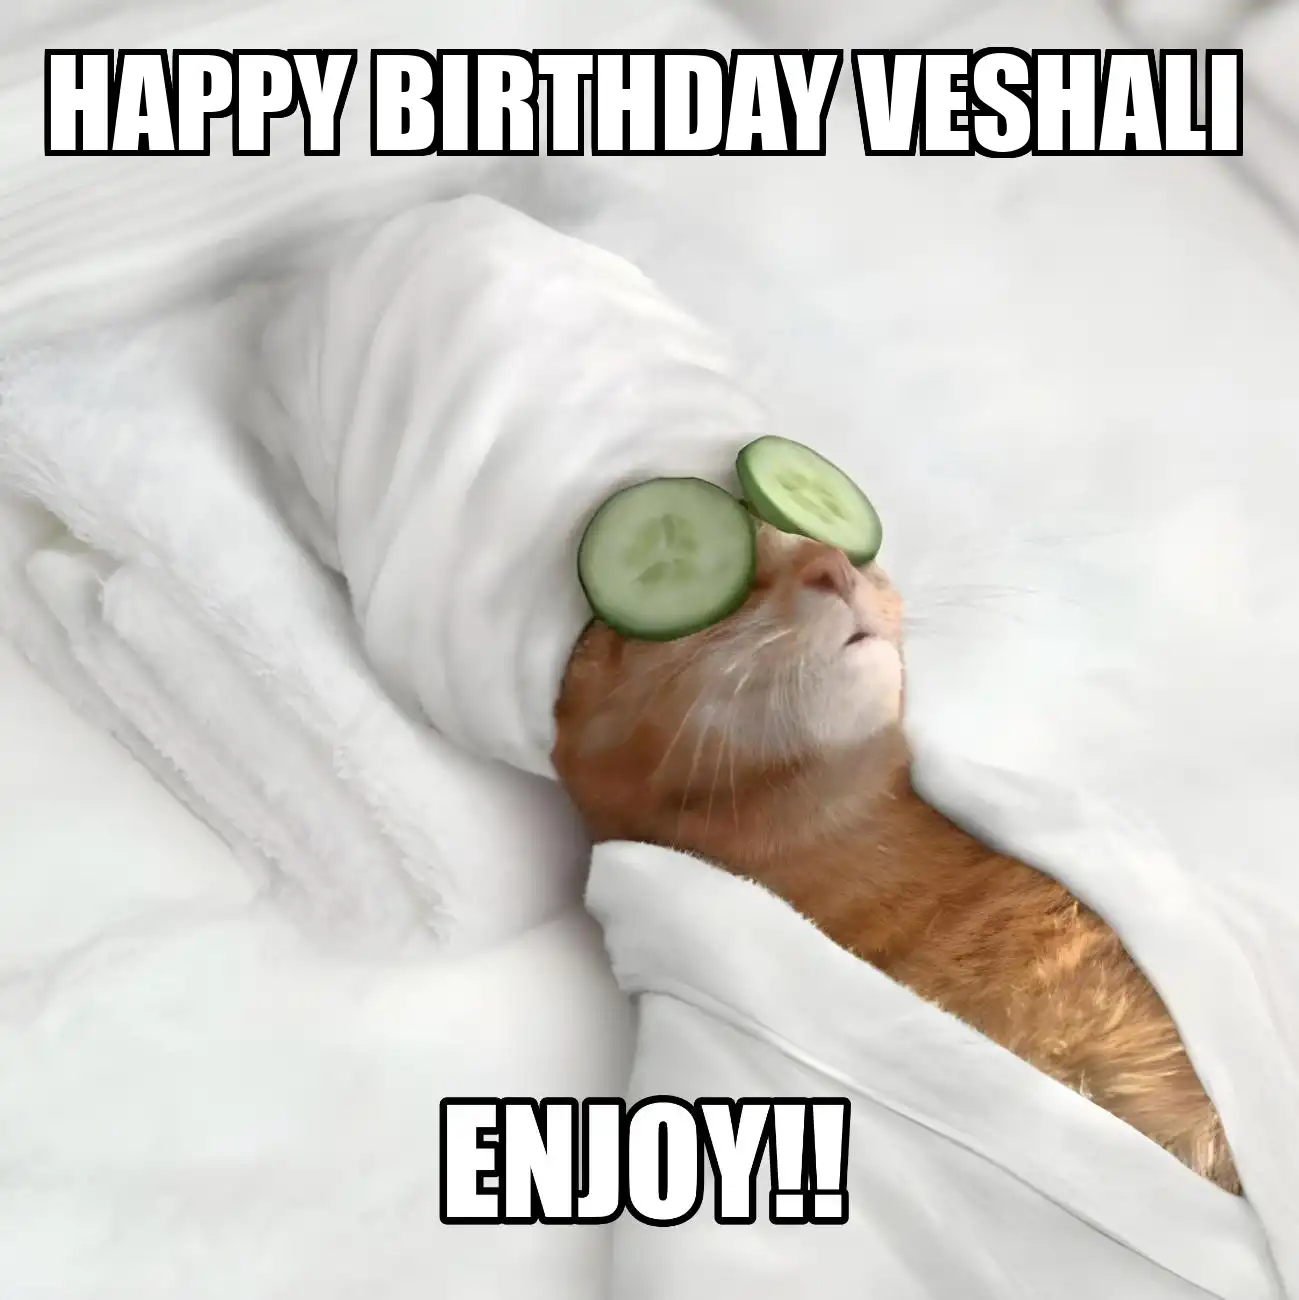 Happy Birthday Veshali Enjoy Cat Meme